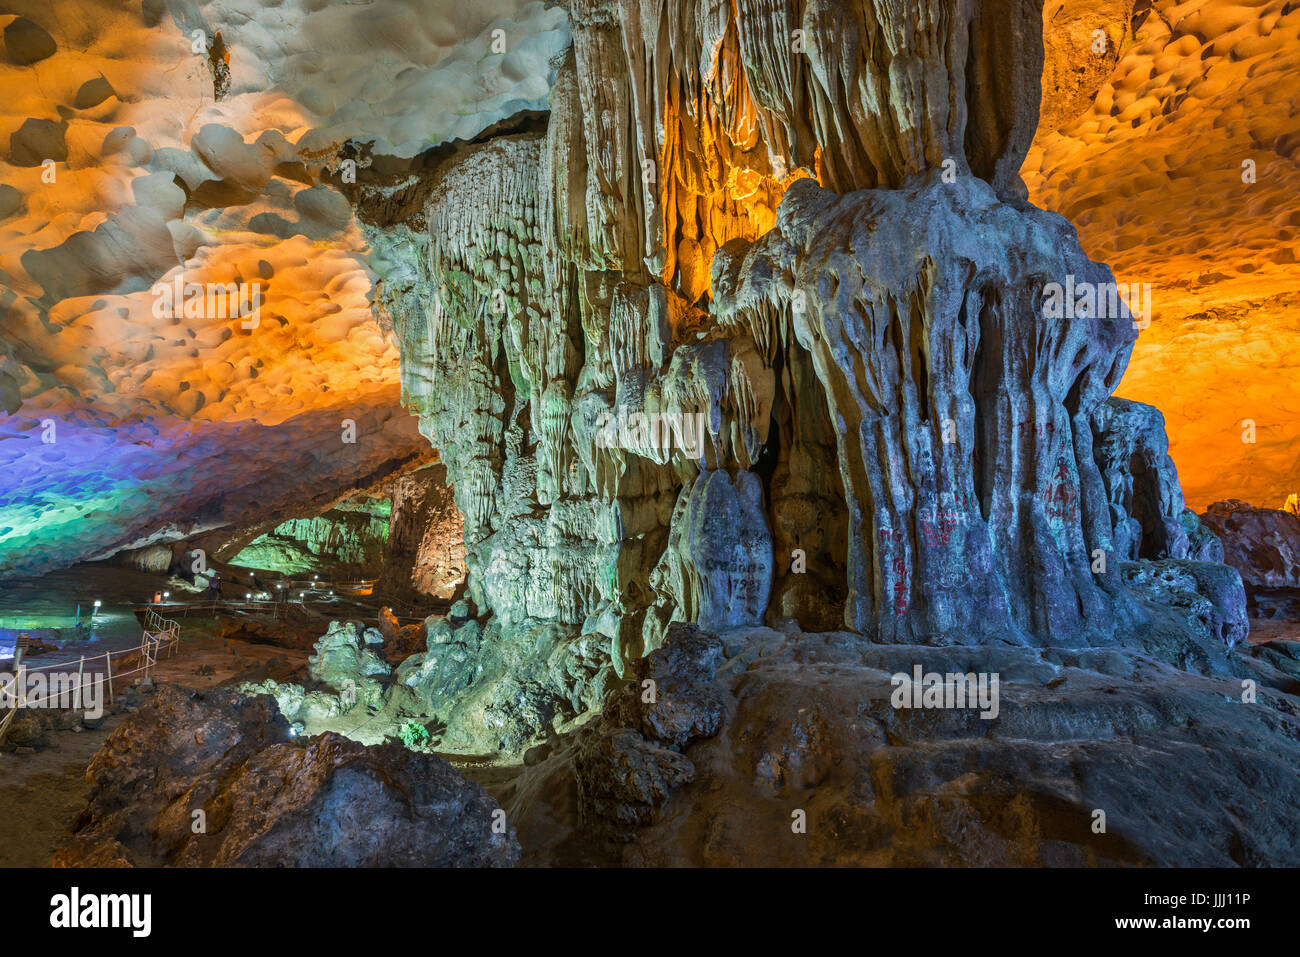 Vue panoramique de la grande grotte de la Baie d'Halong au Vietnam. Banque D'Images